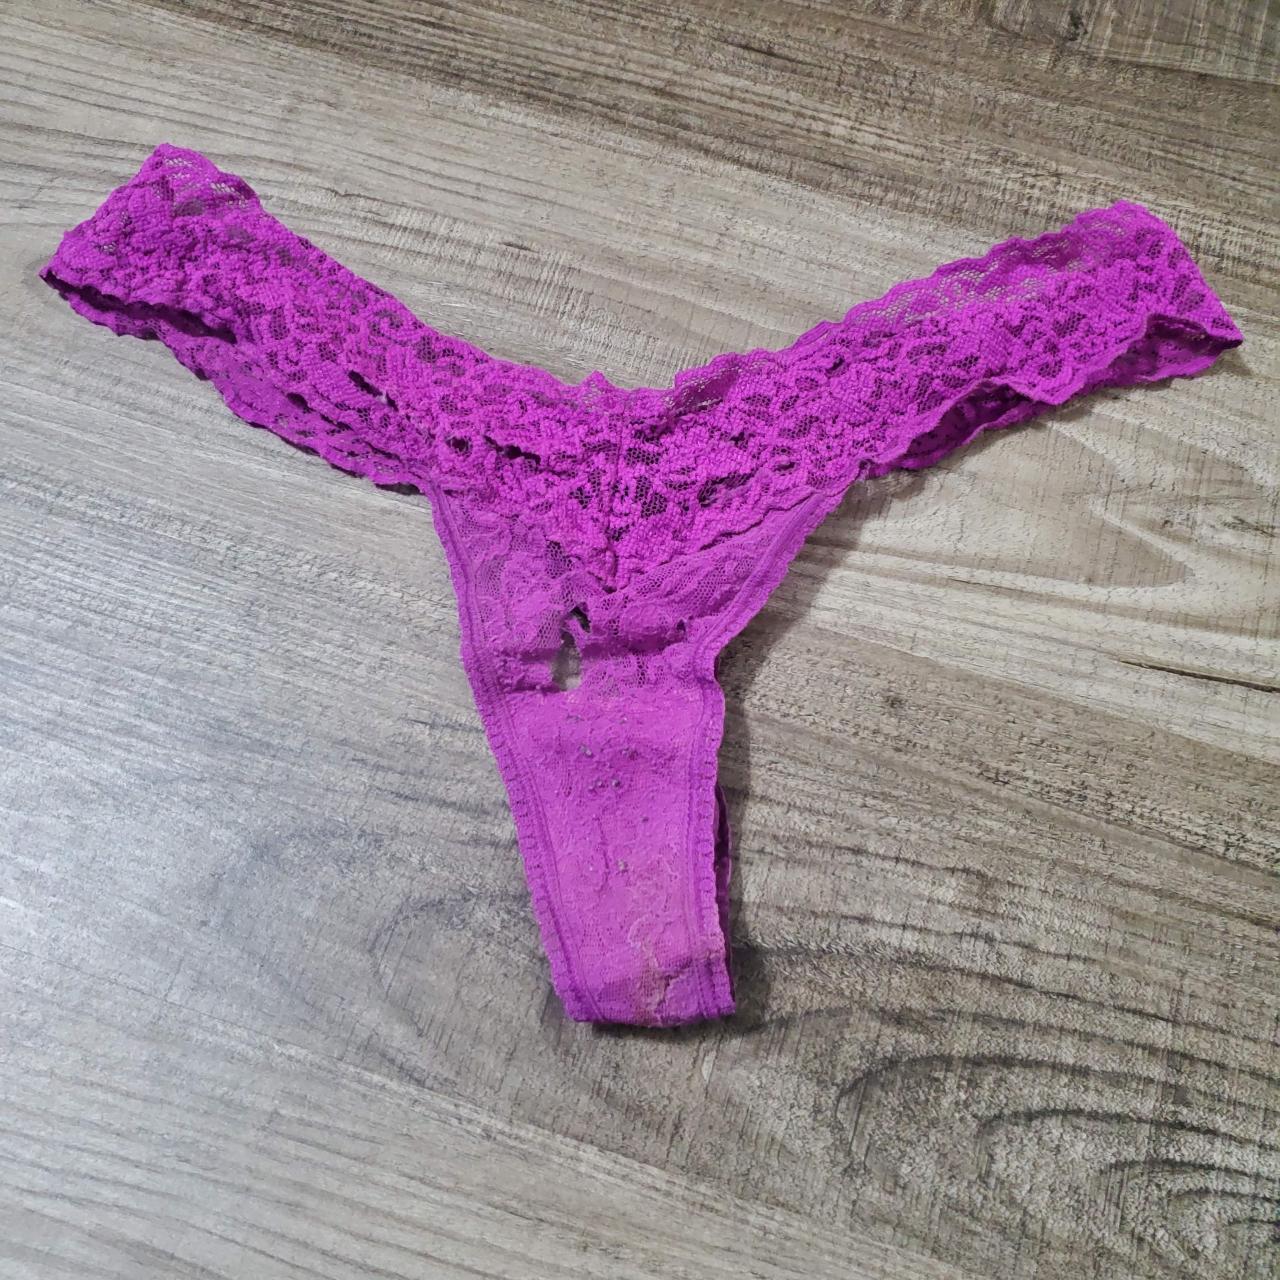 Victoria's Secret Purple Lace Thong Panty, One Size - Depop